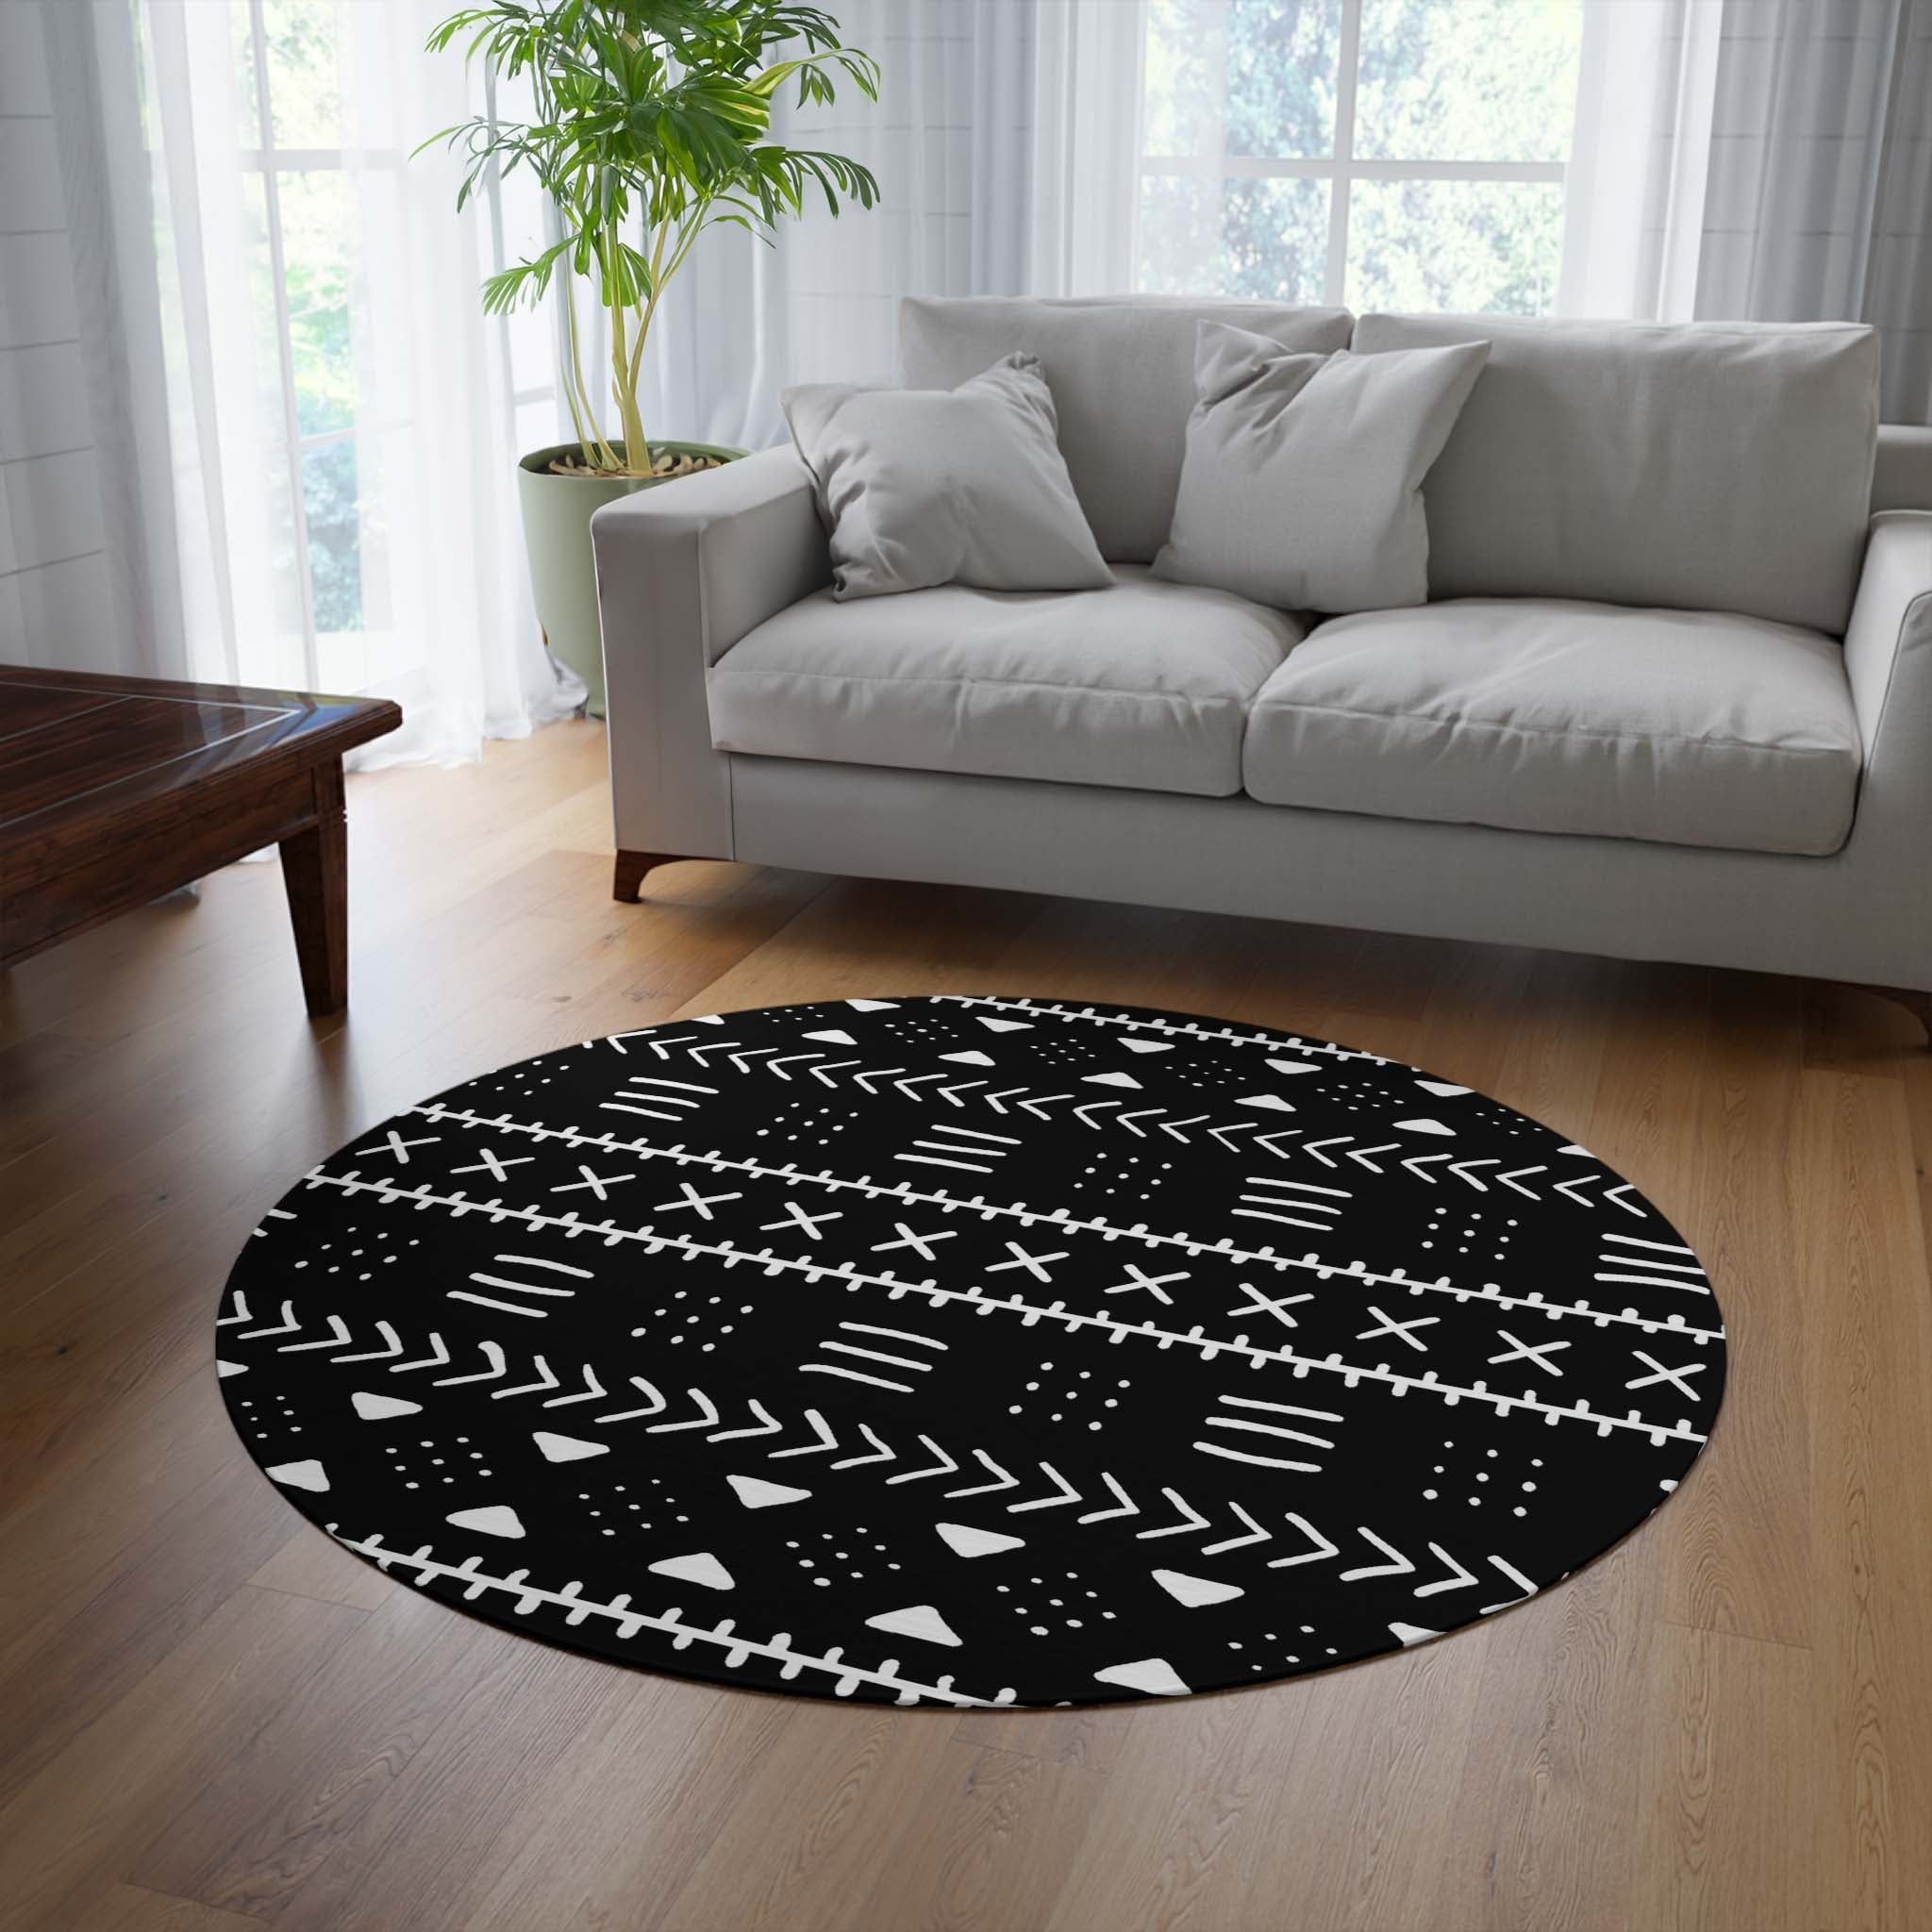 African Round Rug For Living Room Tribal Carpet Black White